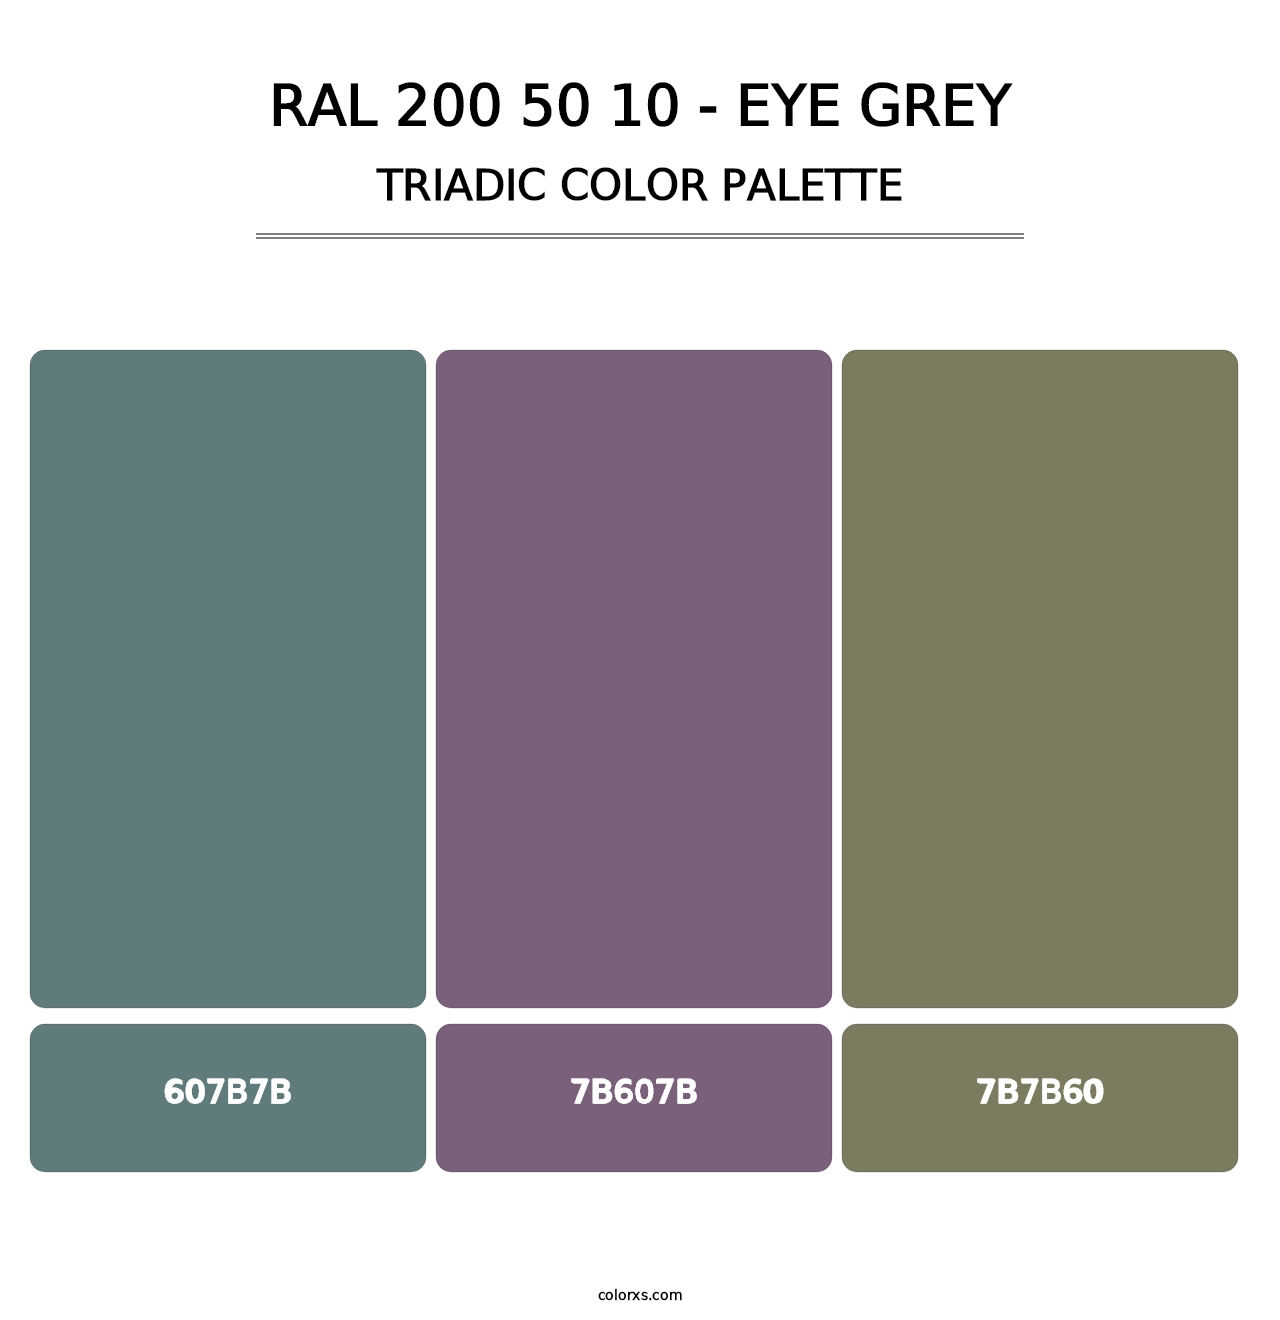 RAL 200 50 10 - Eye Grey - Triadic Color Palette